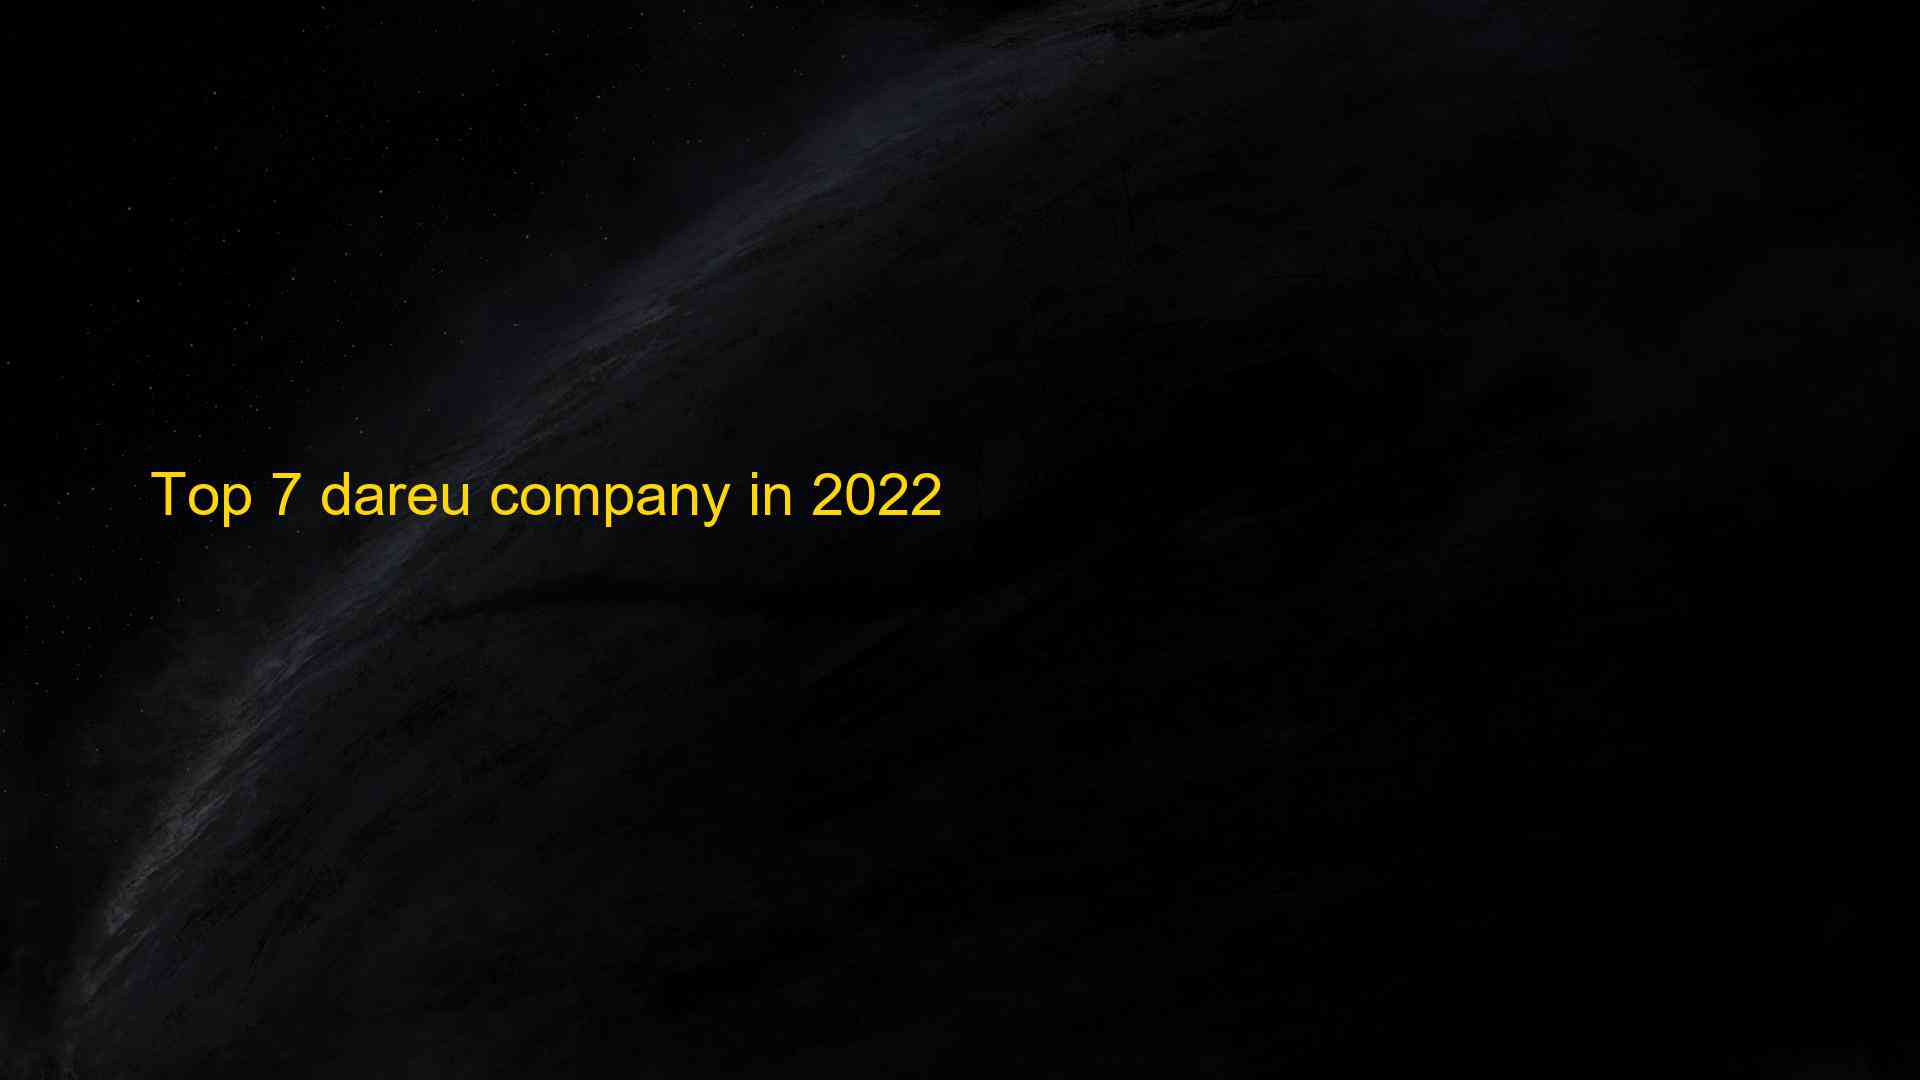 Top 7 dareu company in 2022 1660035083